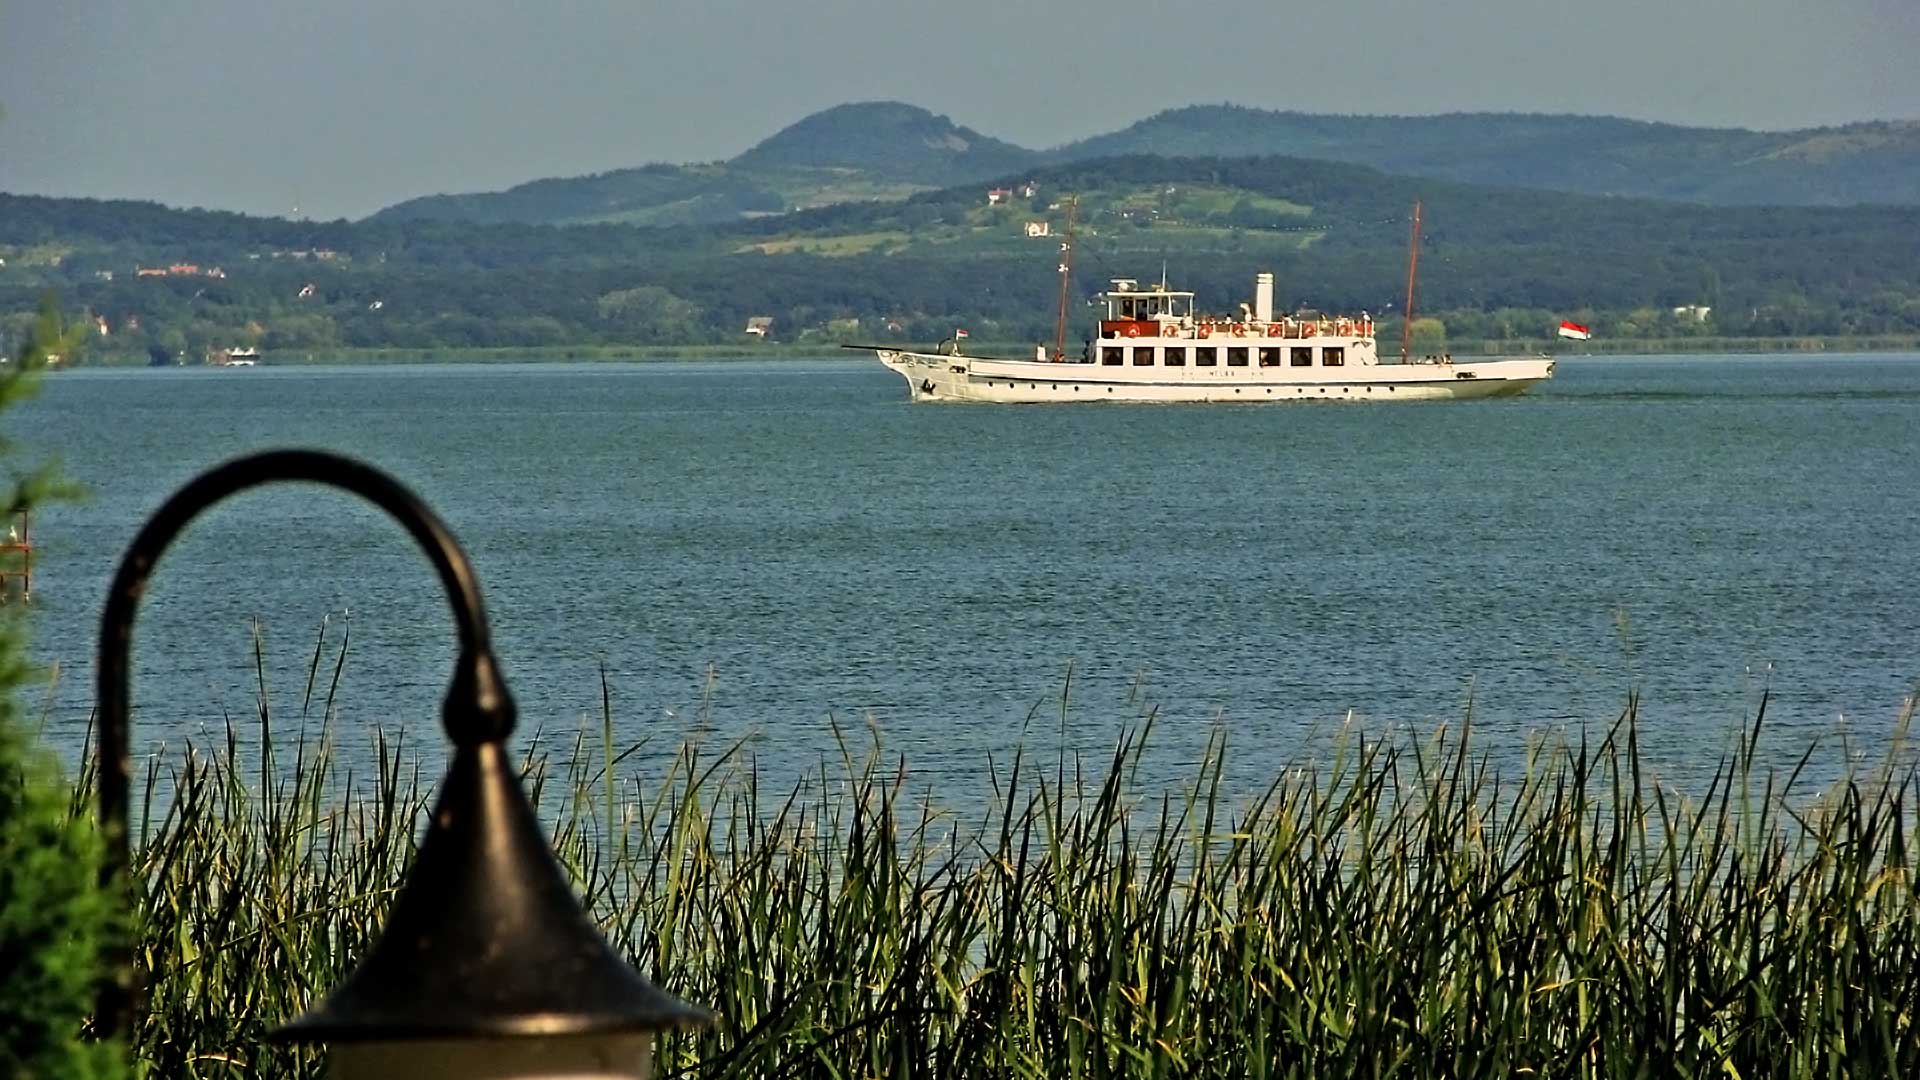 A Balaton legromantikusabb hajója. 3 készült belőle: Helka, Kelén, Zebegény. Ez utóbbit elvitték a Dunára.